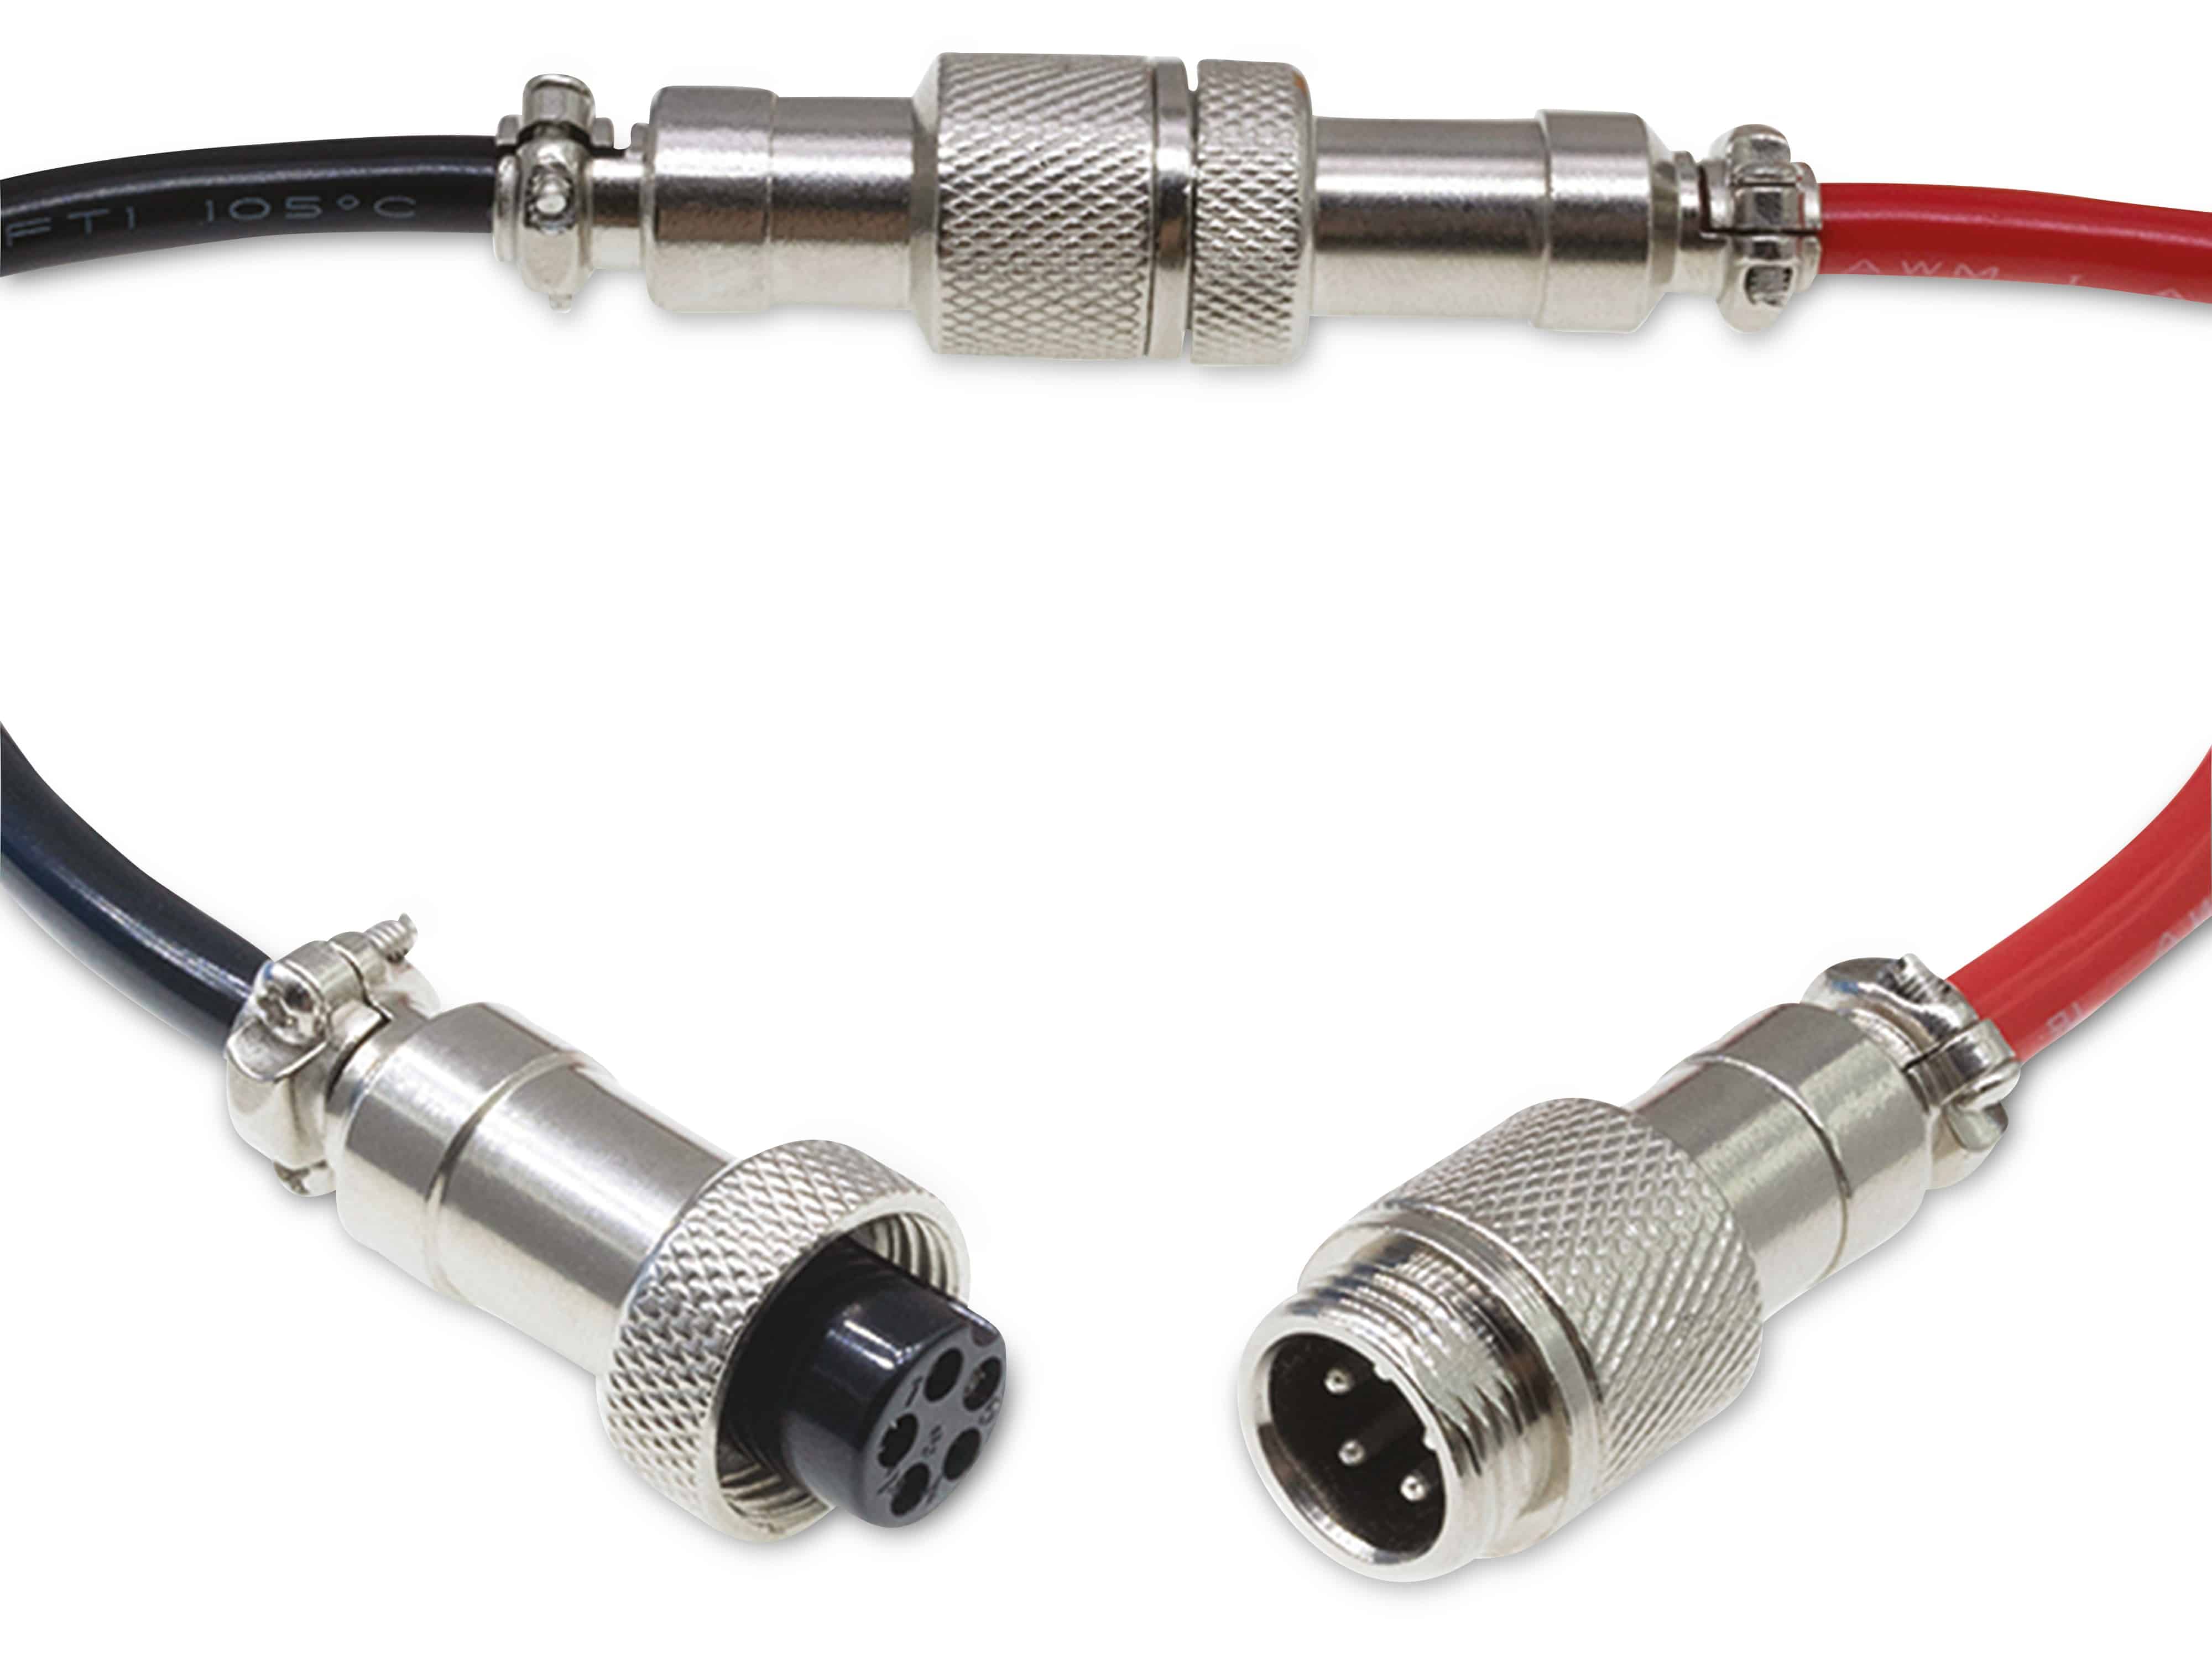 Rundsteckverbinder, 5-polig, 60V, 2A, Lötanschluss, IP55, wire to wire, 1 Stecker + 1 Buchse